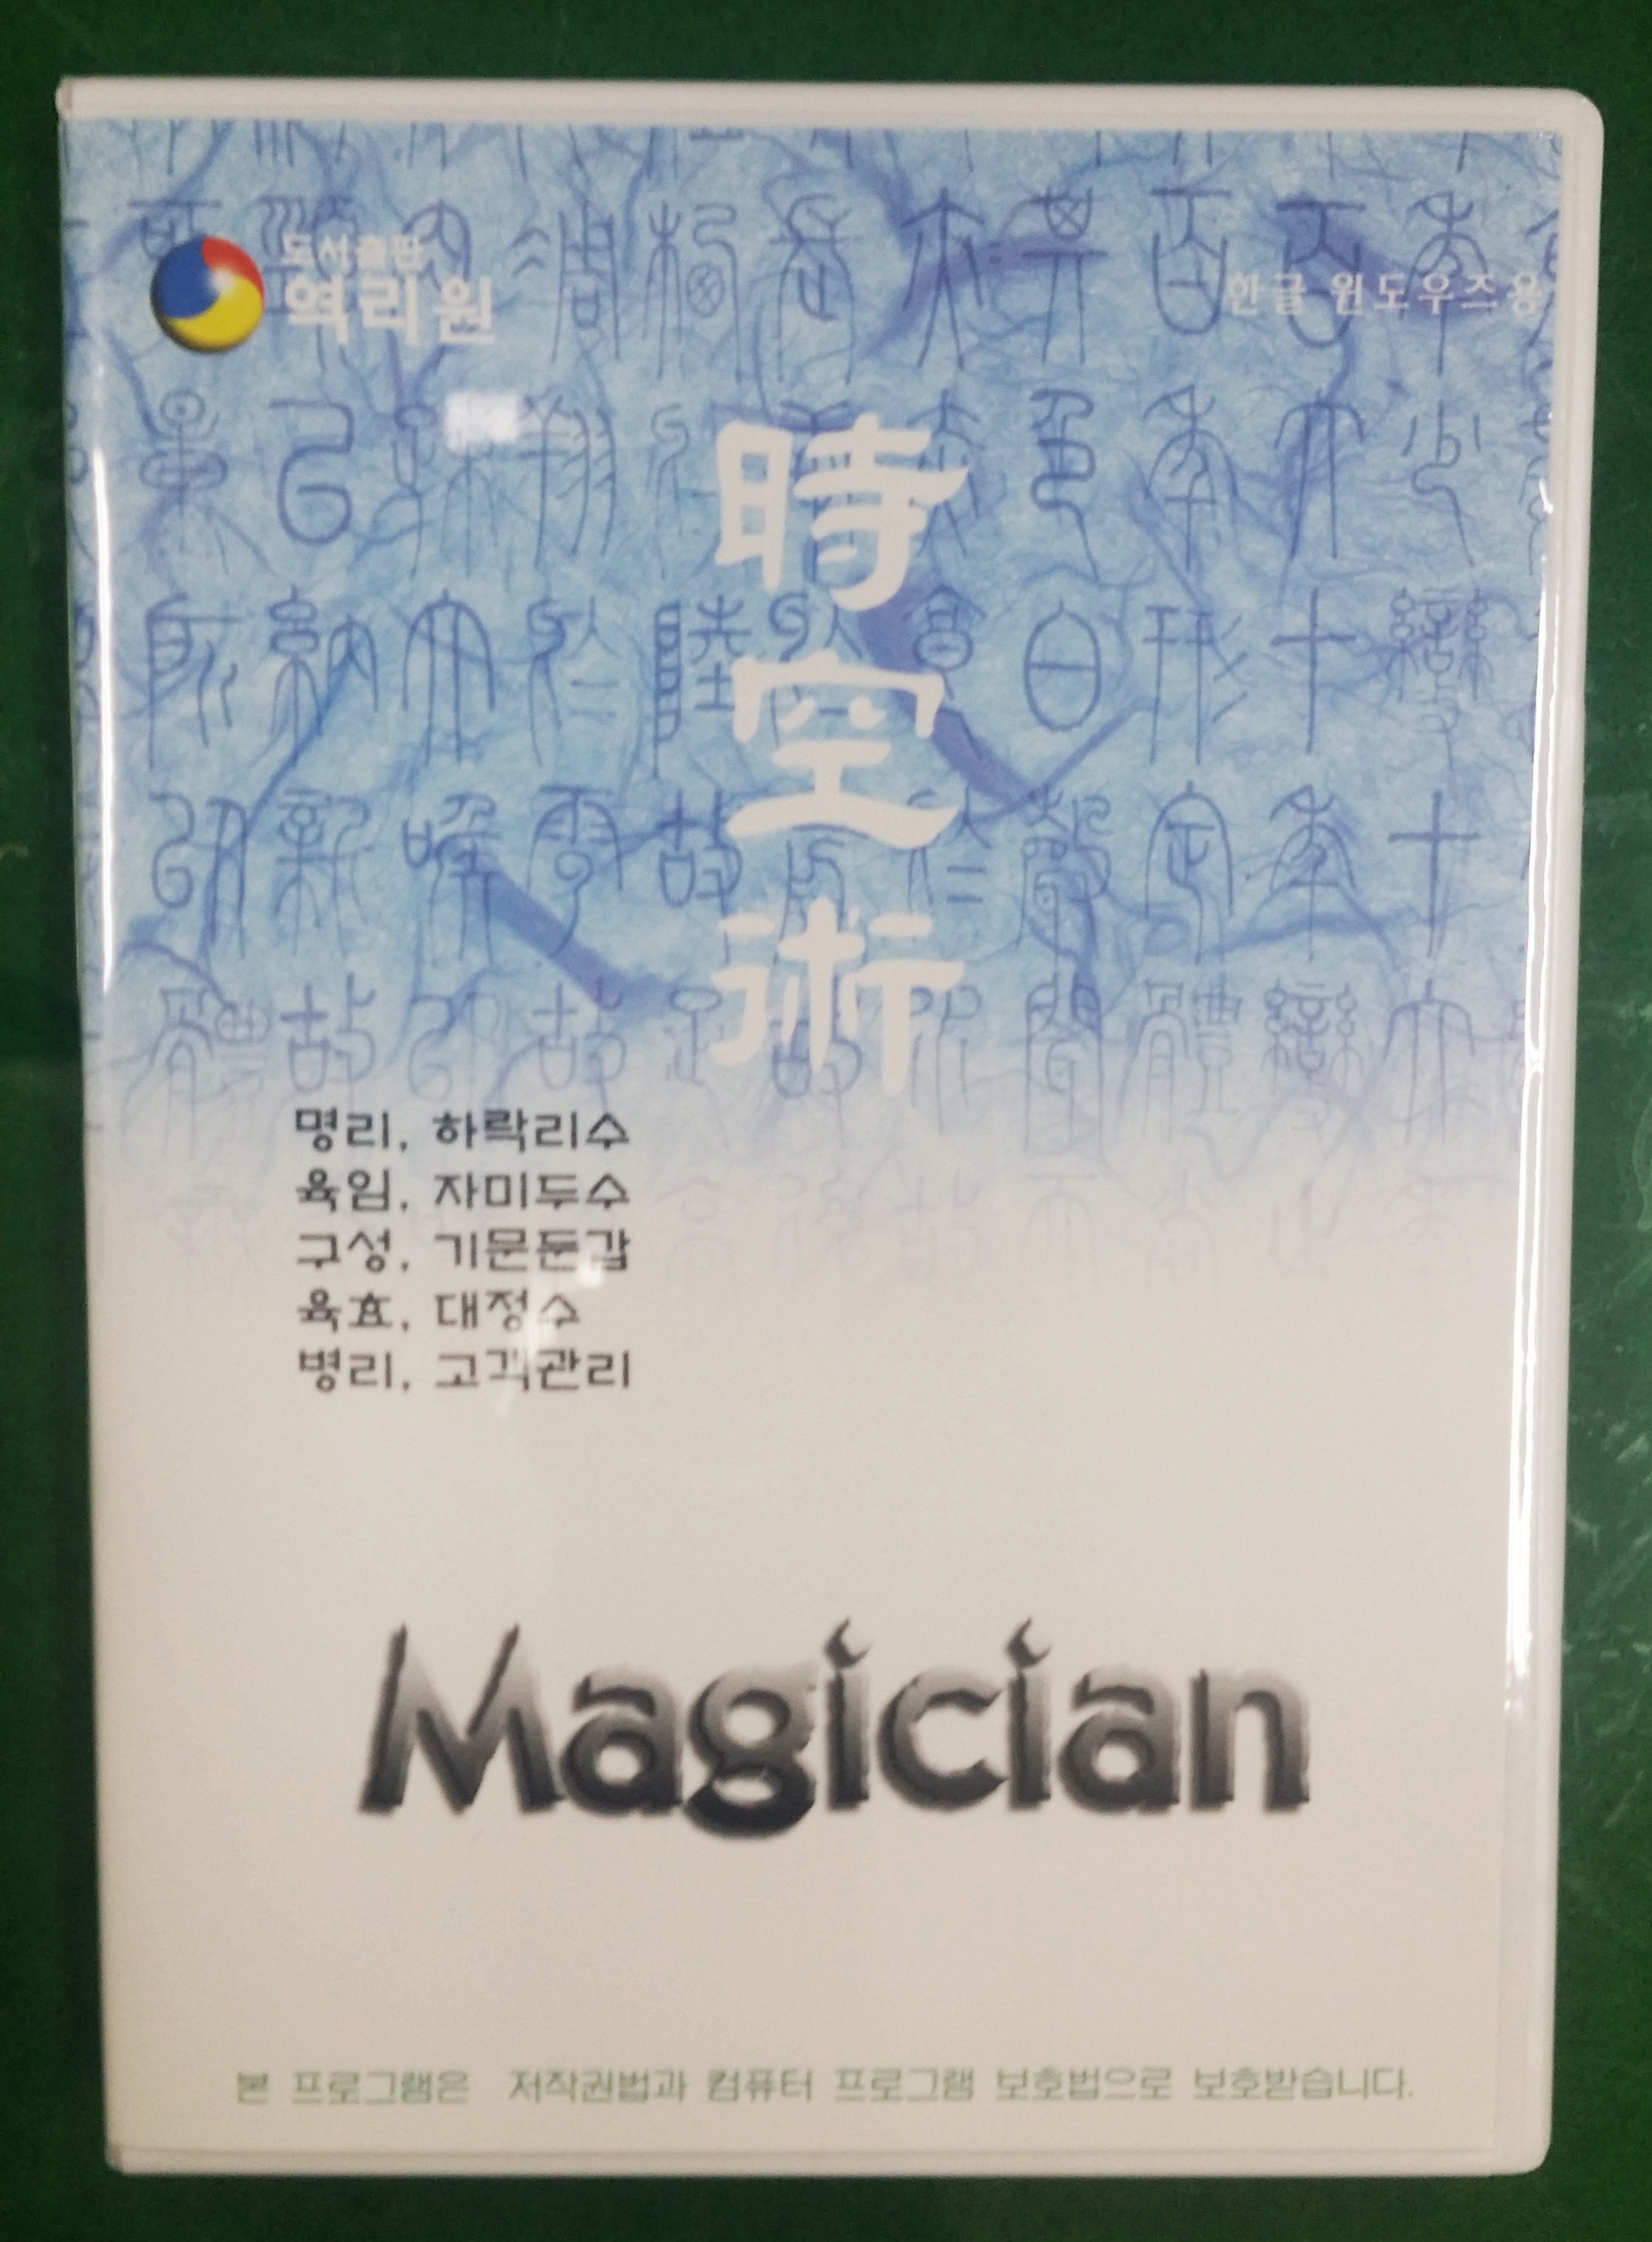 shop99,오상도 선생님의 소프트웨어 Magician V3.51